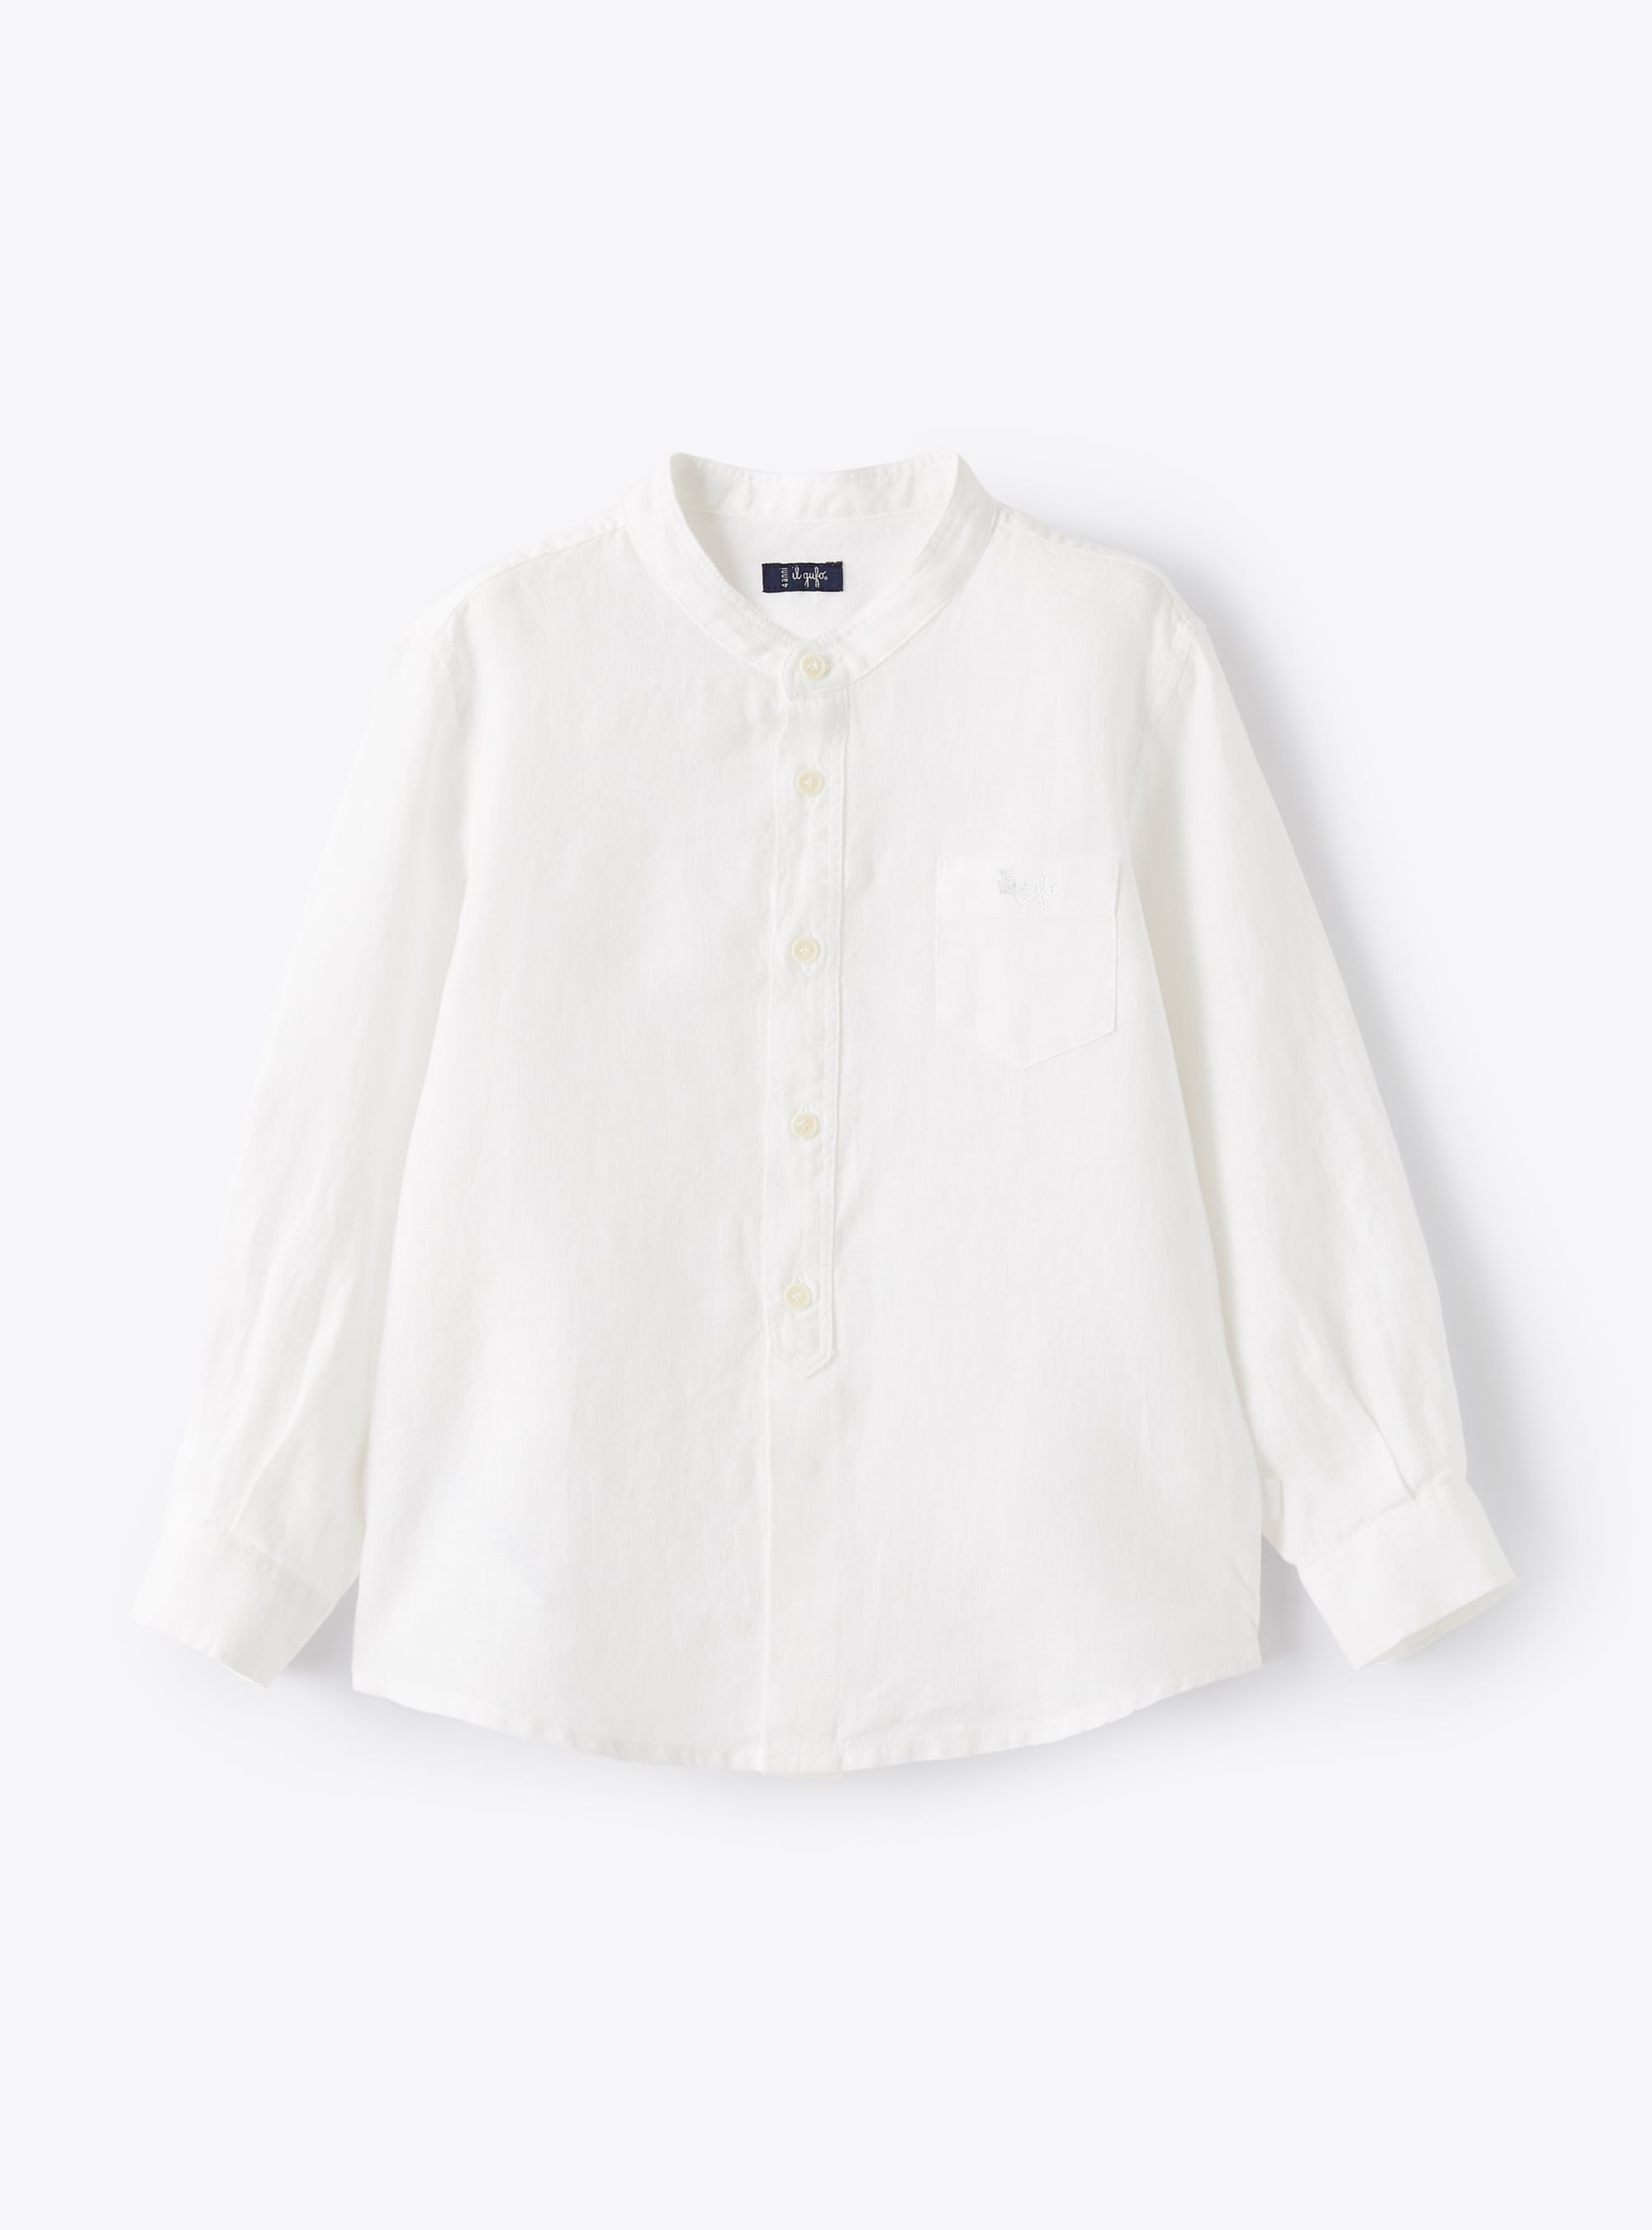 Koreanisches Hemd aus weißem Leinen - Hemden - Il Gufo